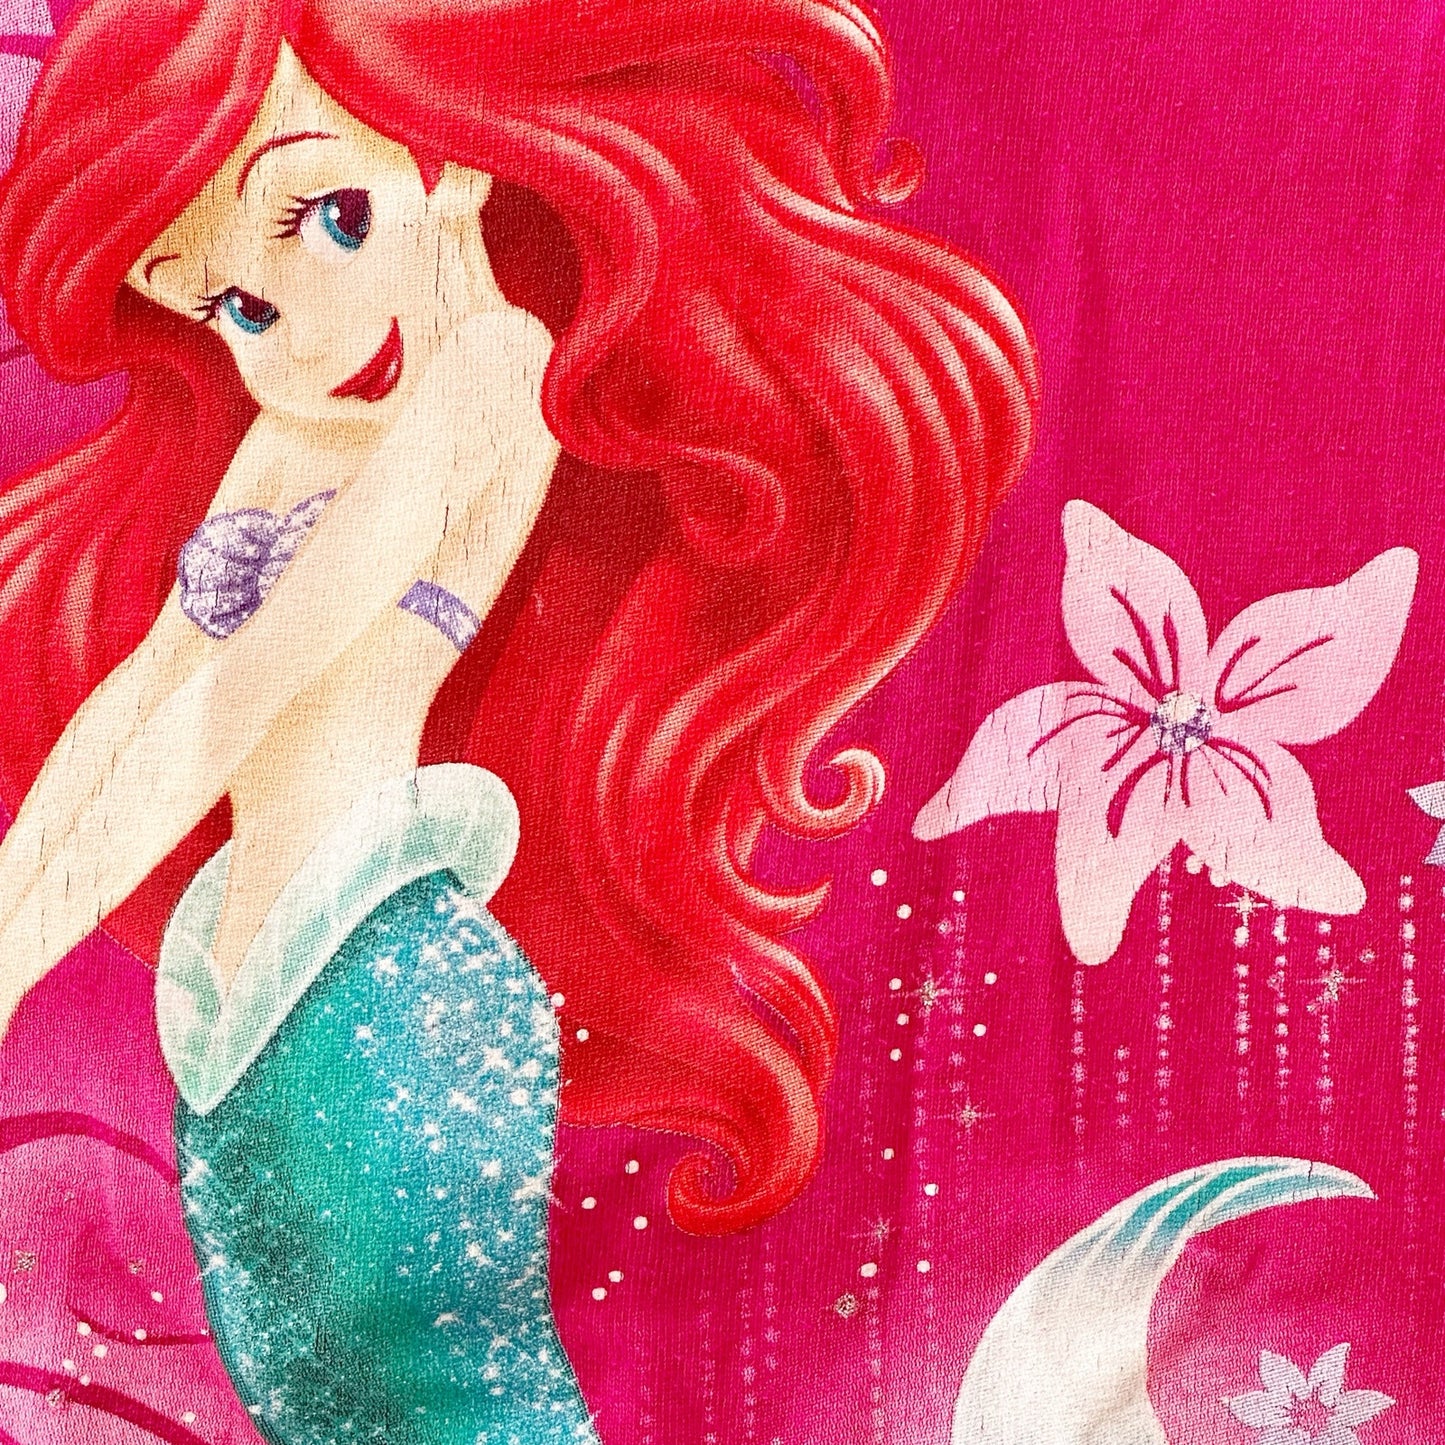 Y2K Disney Store Ariel Little Mermaid Graphic Tee: 7y